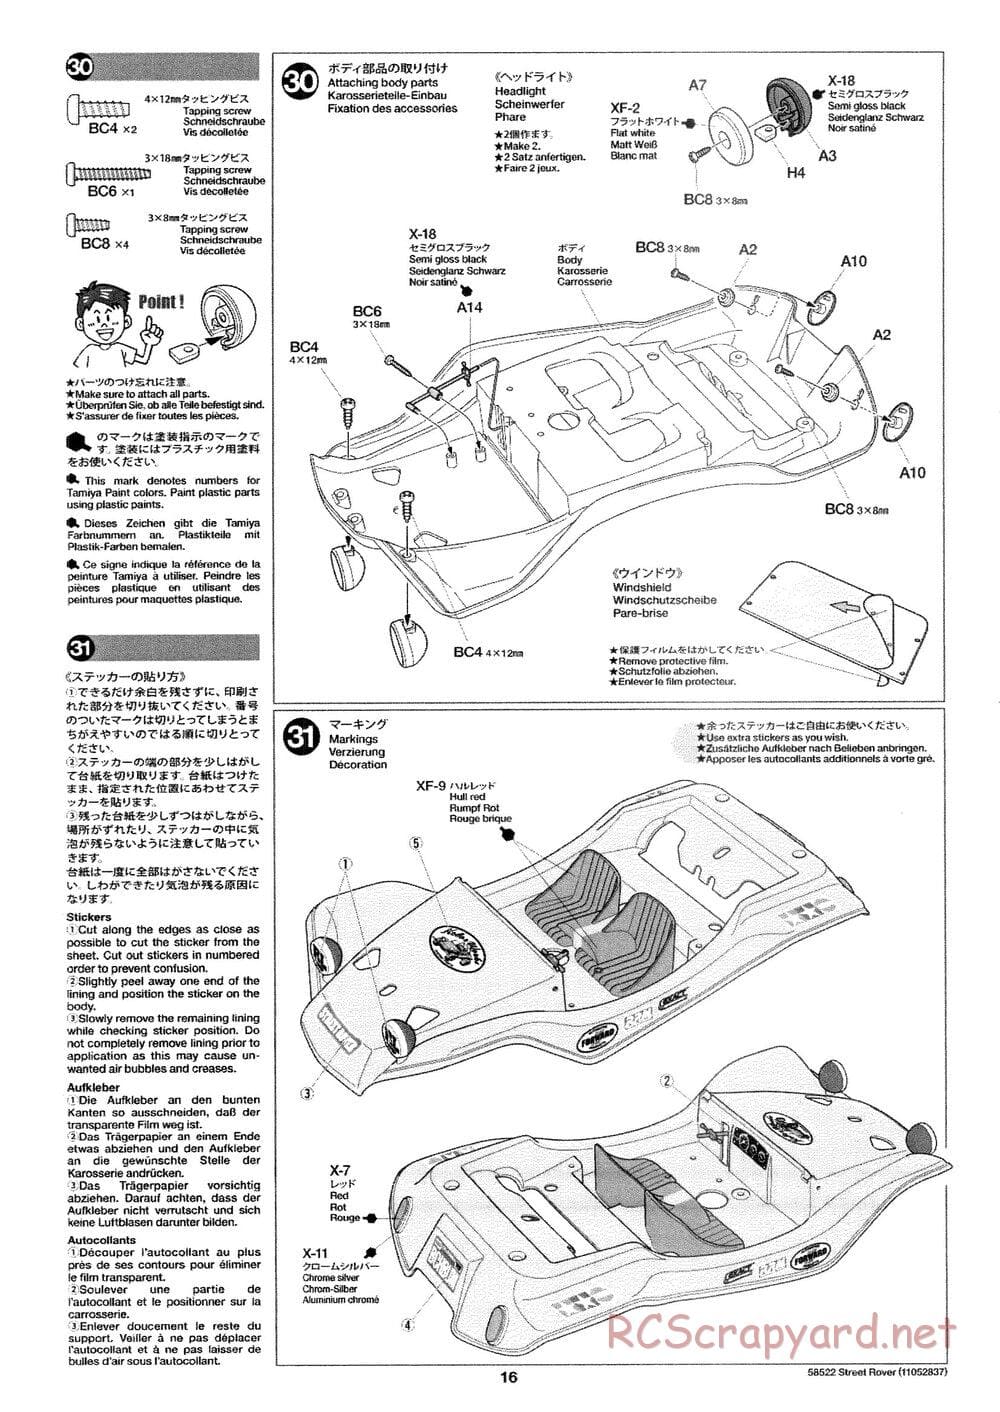 Tamiya - Street Rover Chassis - Manual - Page 17